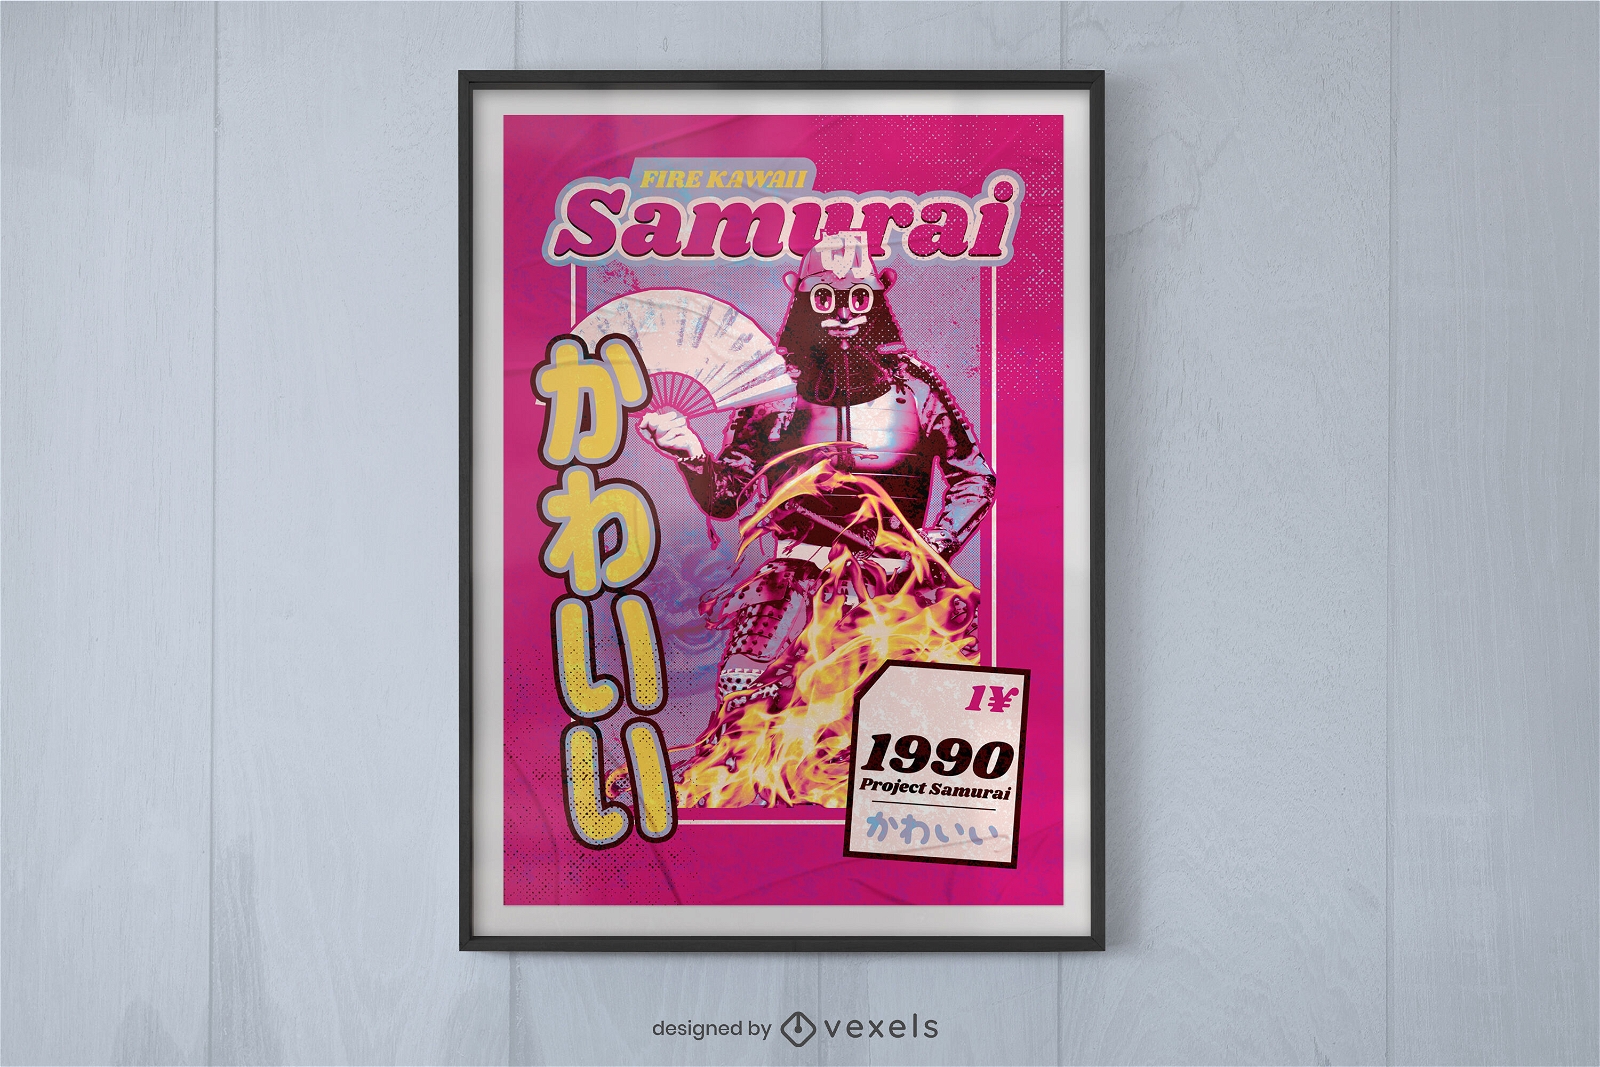 Dise?o de cartel de robot samurai.